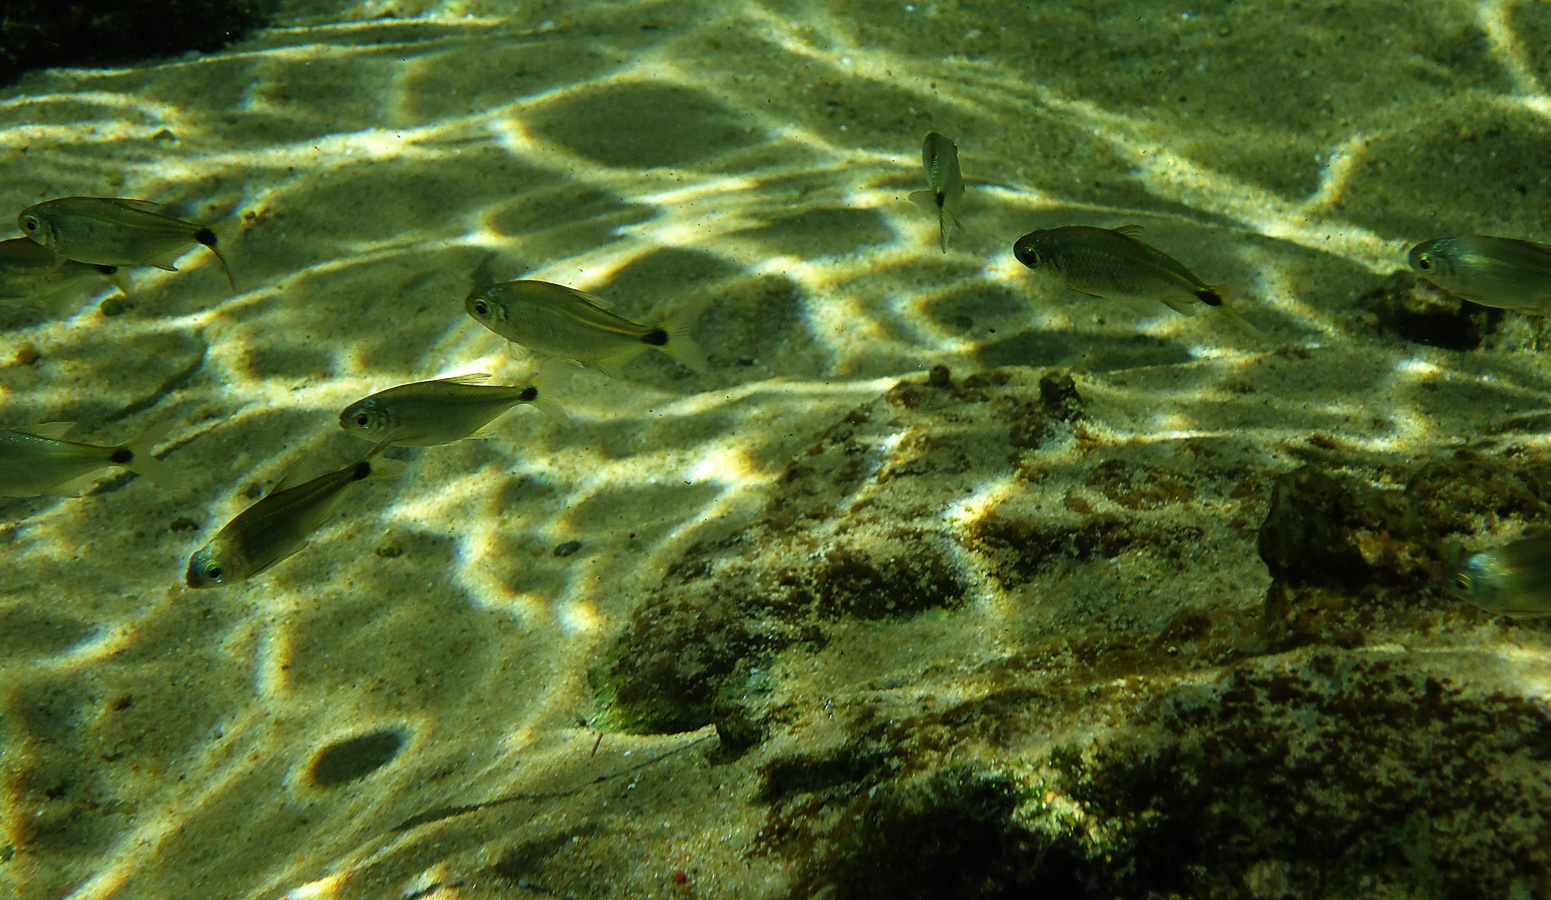 Schnorcheln im kristallklares Wasser im Fluss [15.63 mm, 1/250 Sek. bei f / 5.0, ISO 80]